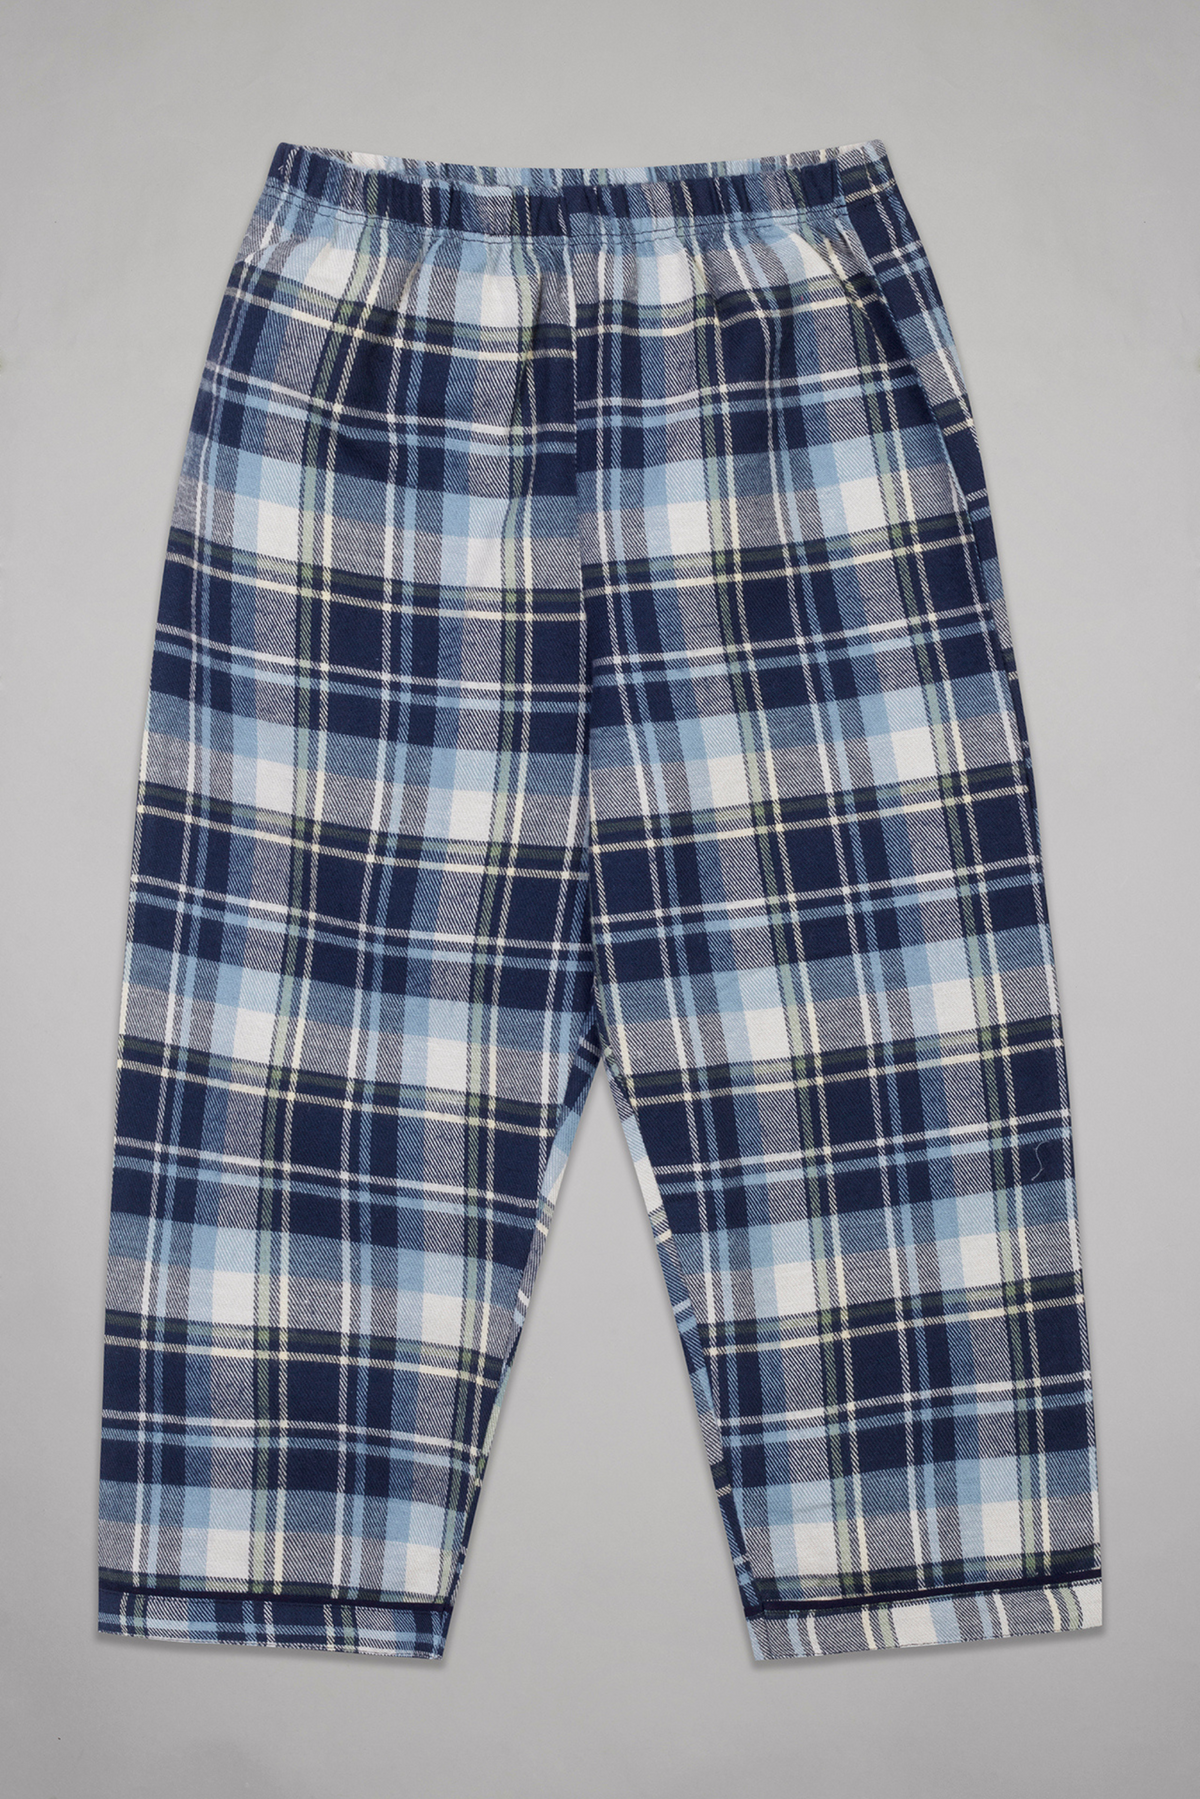 Navy Checks Flannel Full Sleeves Pyjama Set For Kids 5